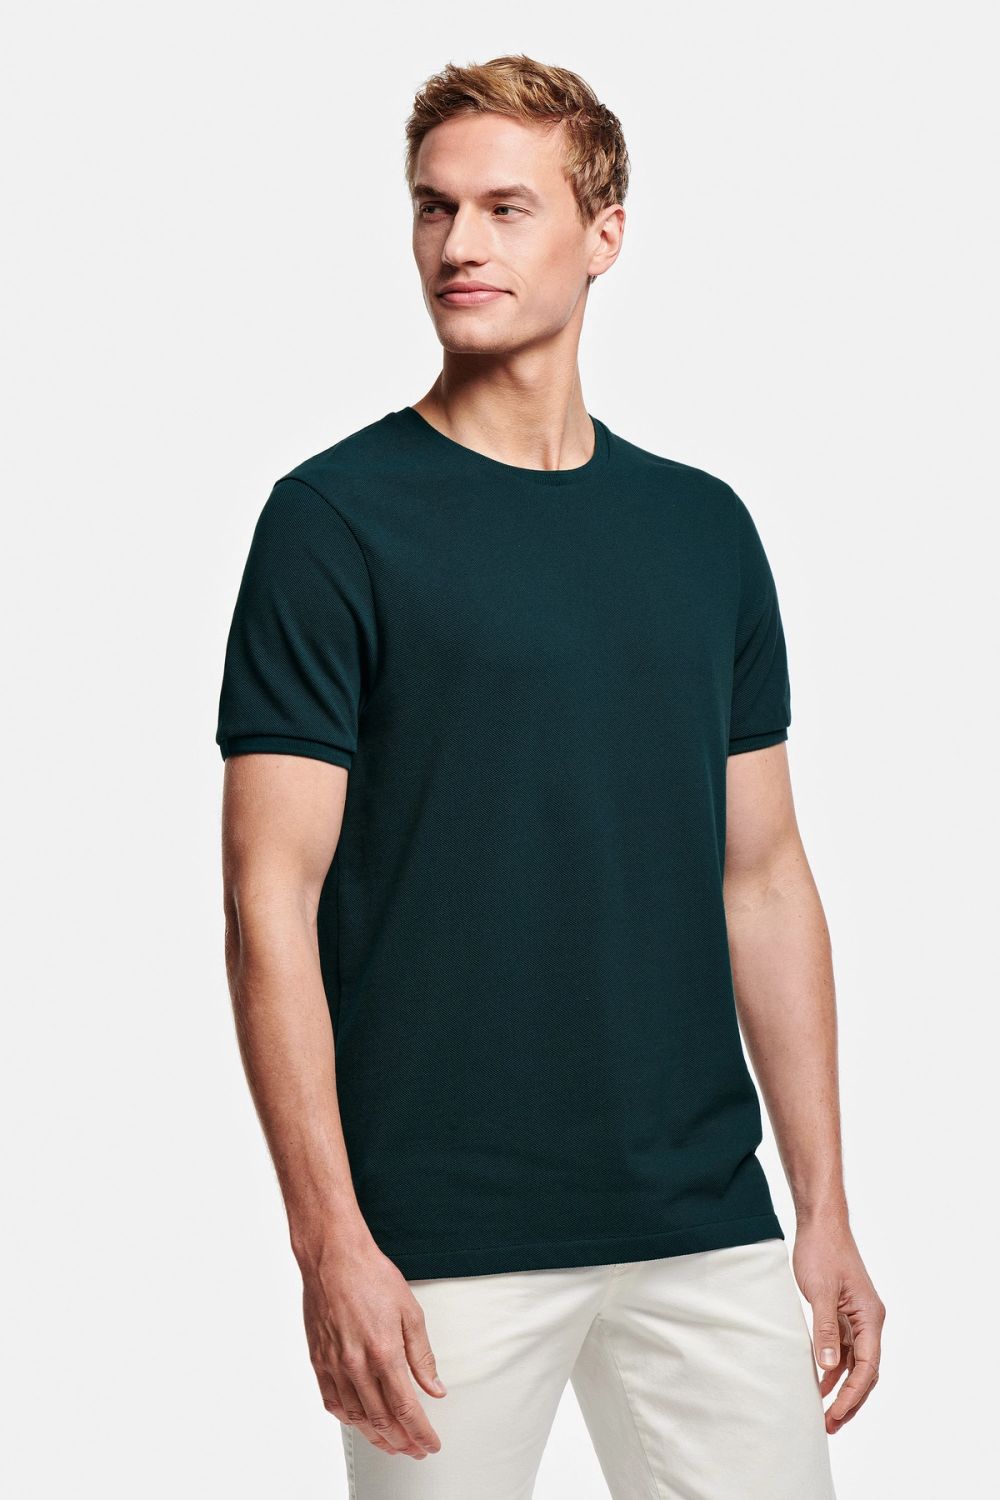 Goodwoods - T-shirt Piqué